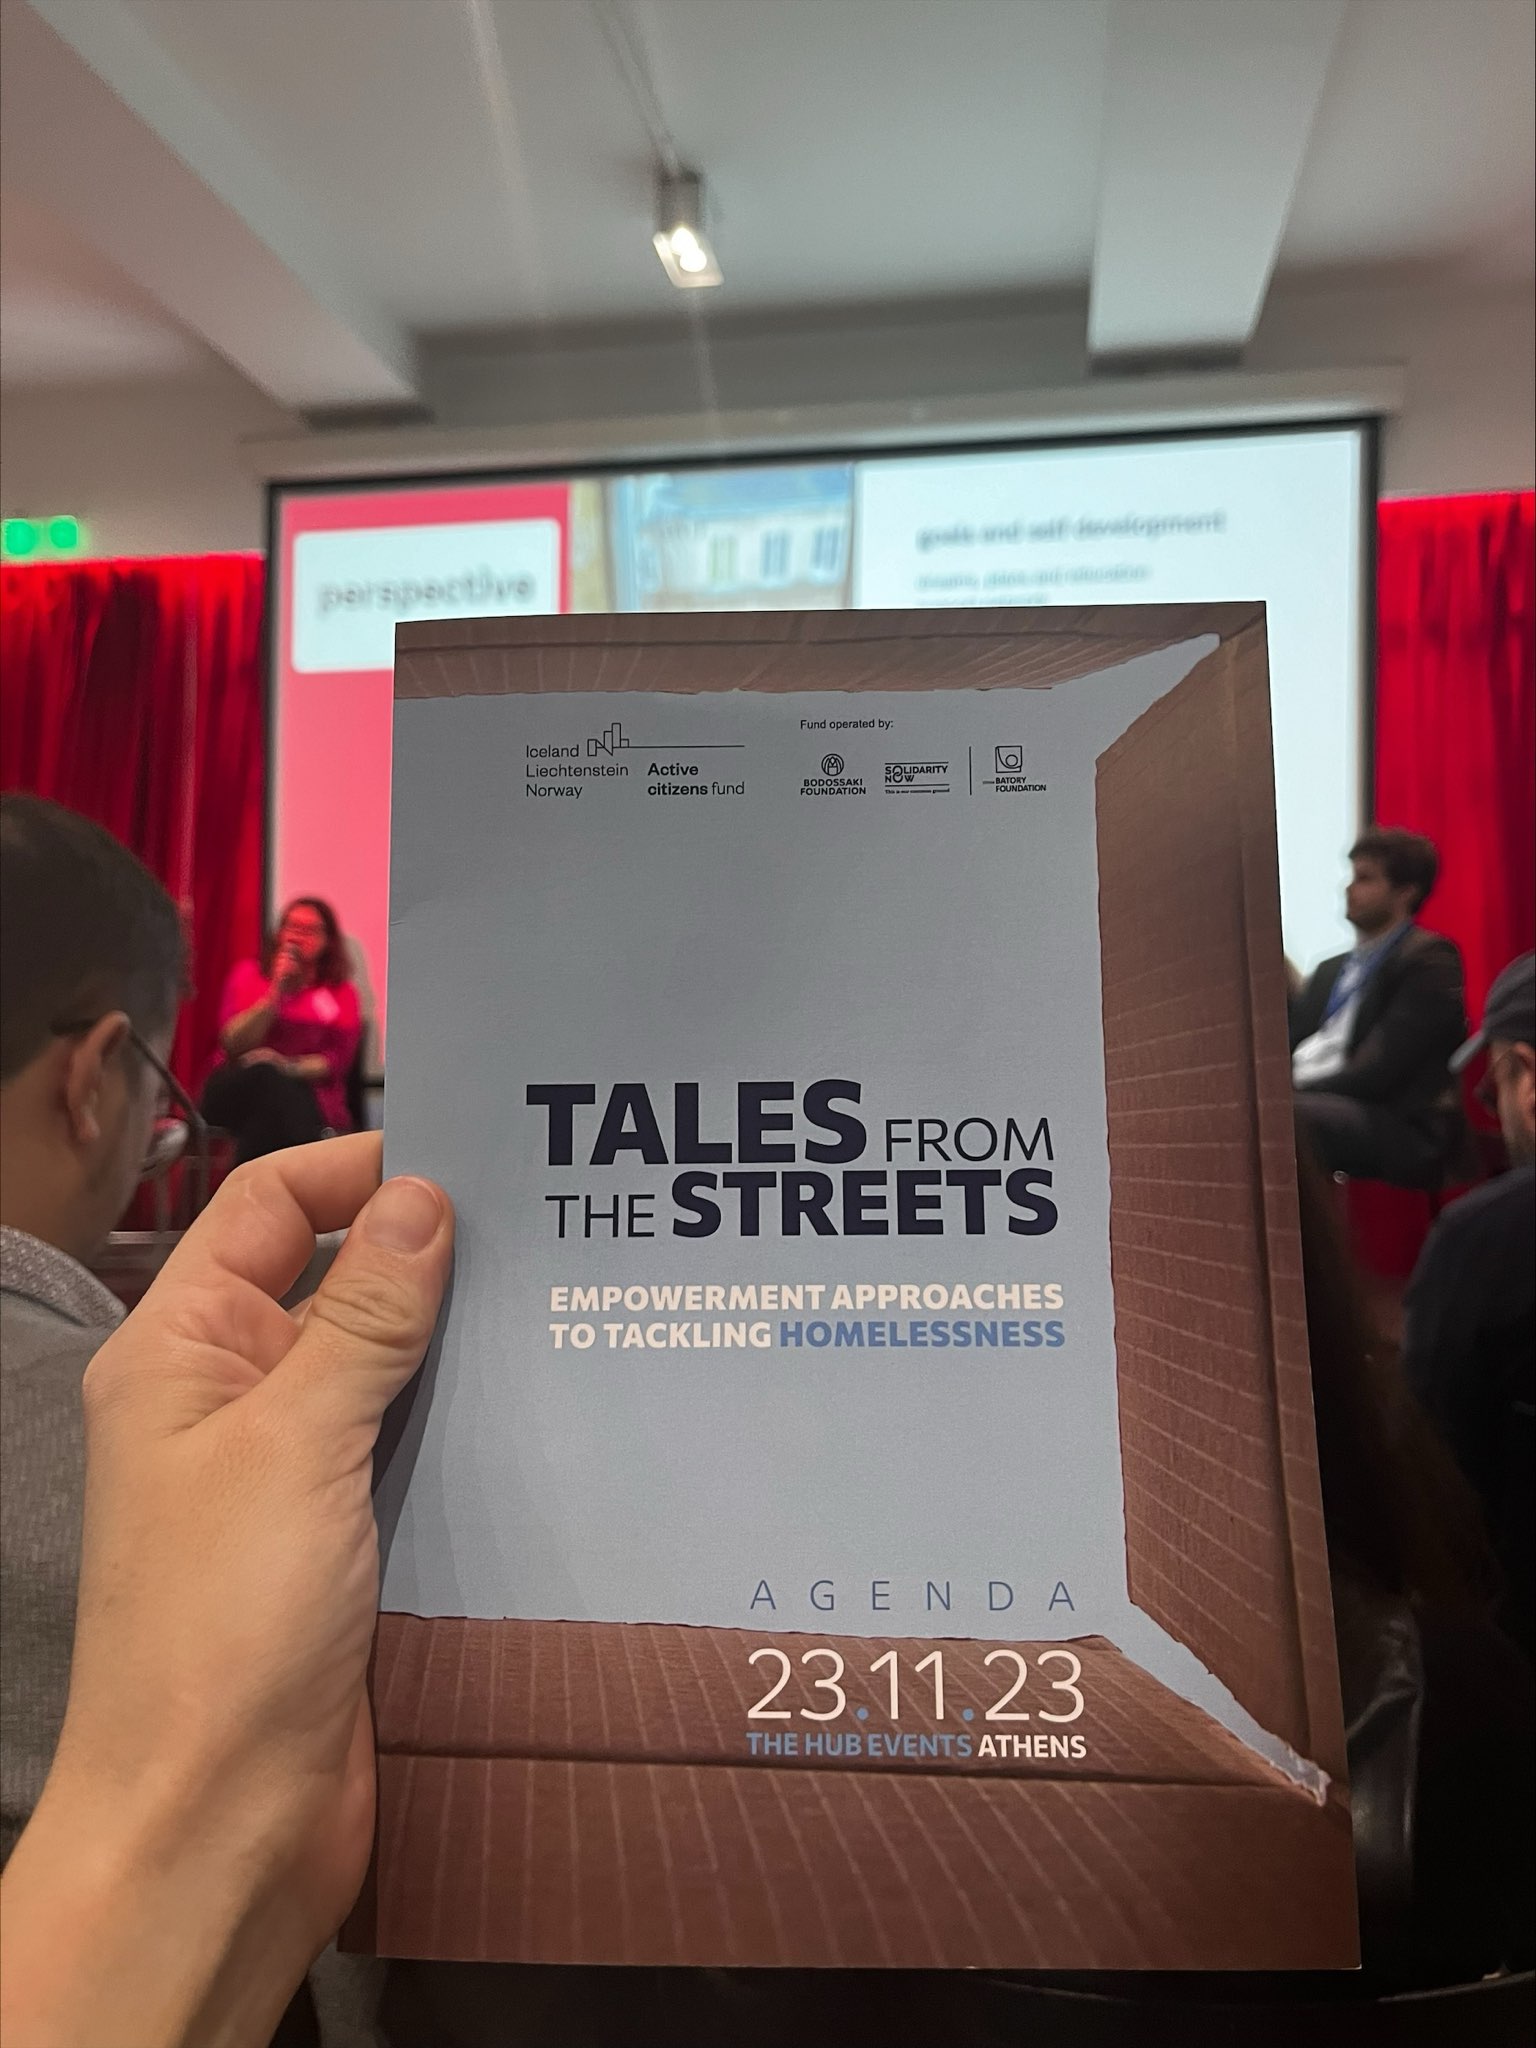 ΕΚΔΗΛΩΣΗ: tales from the street | Empowerment approaches to tackling homelessness!